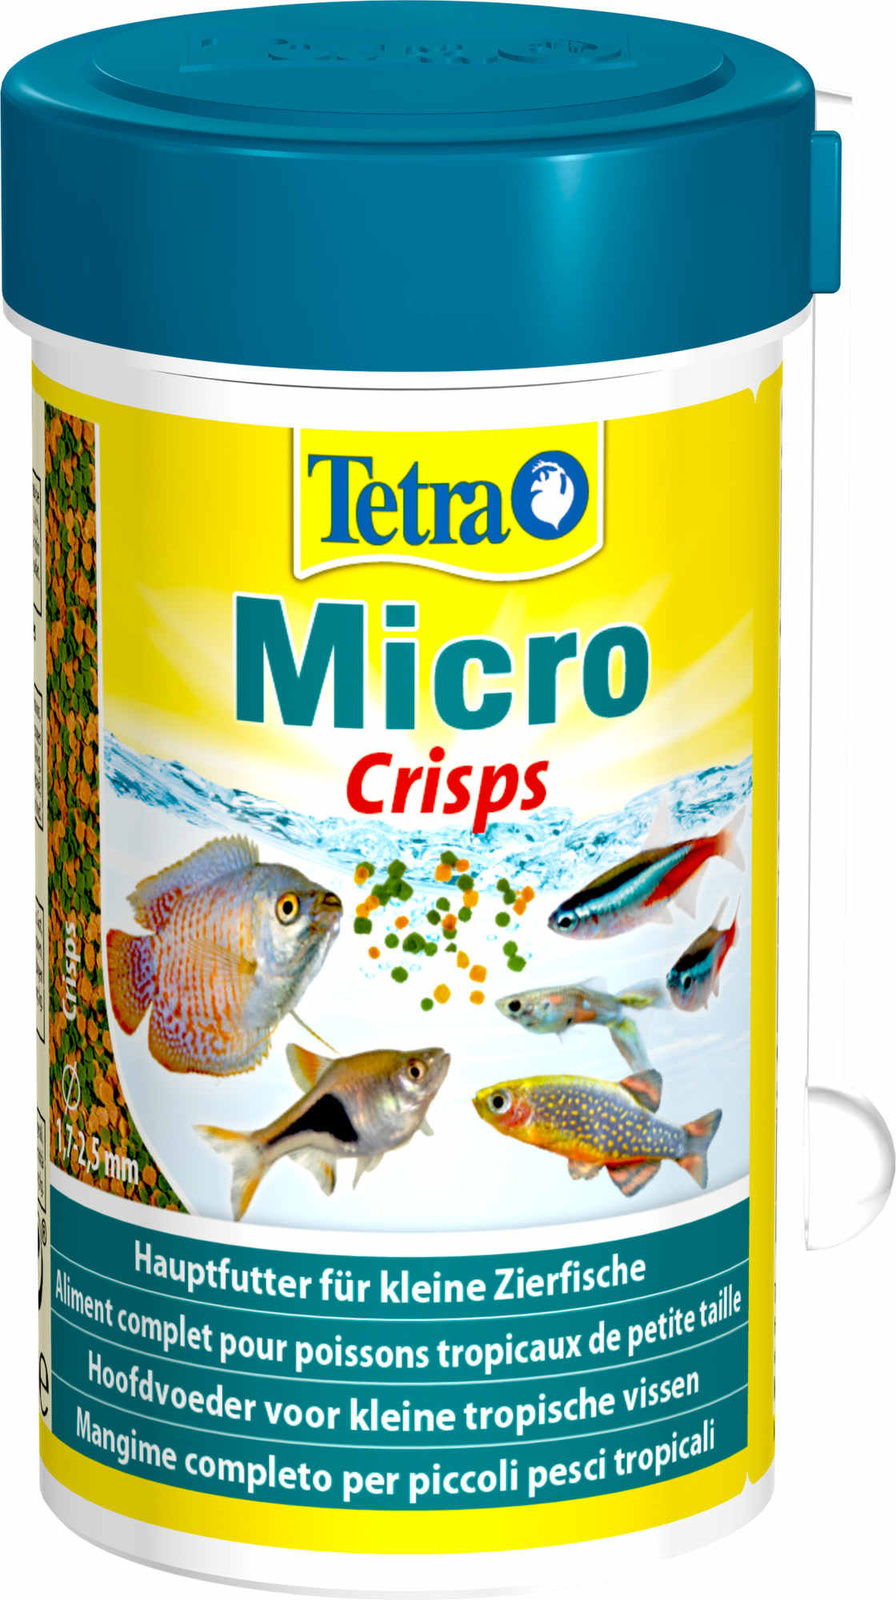 Tetra (корма) Tetra (корма) корм для для всех видов мелких рыб, микрочипсы (39 г)